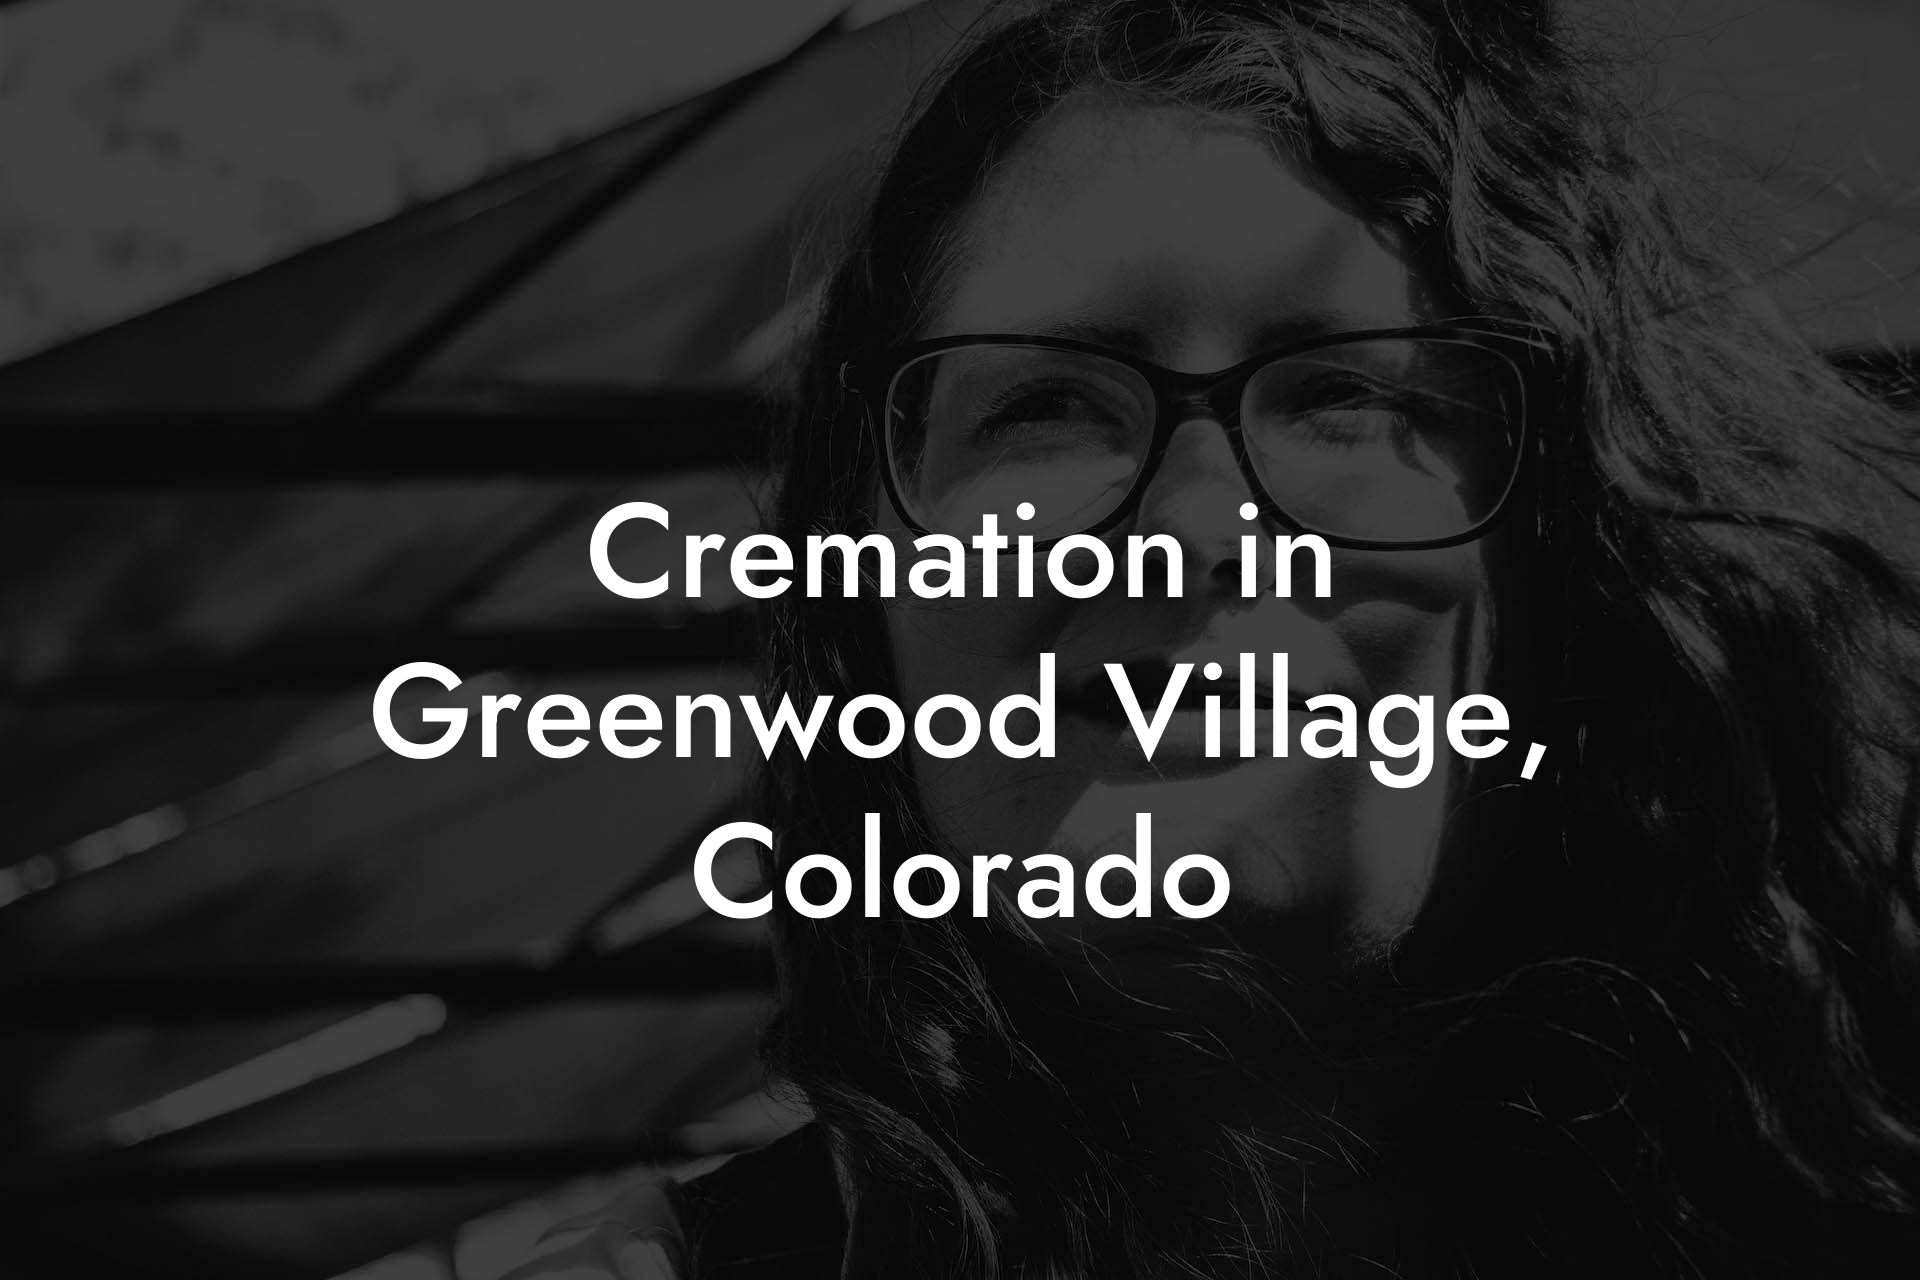 Cremation in Greenwood Village, Colorado